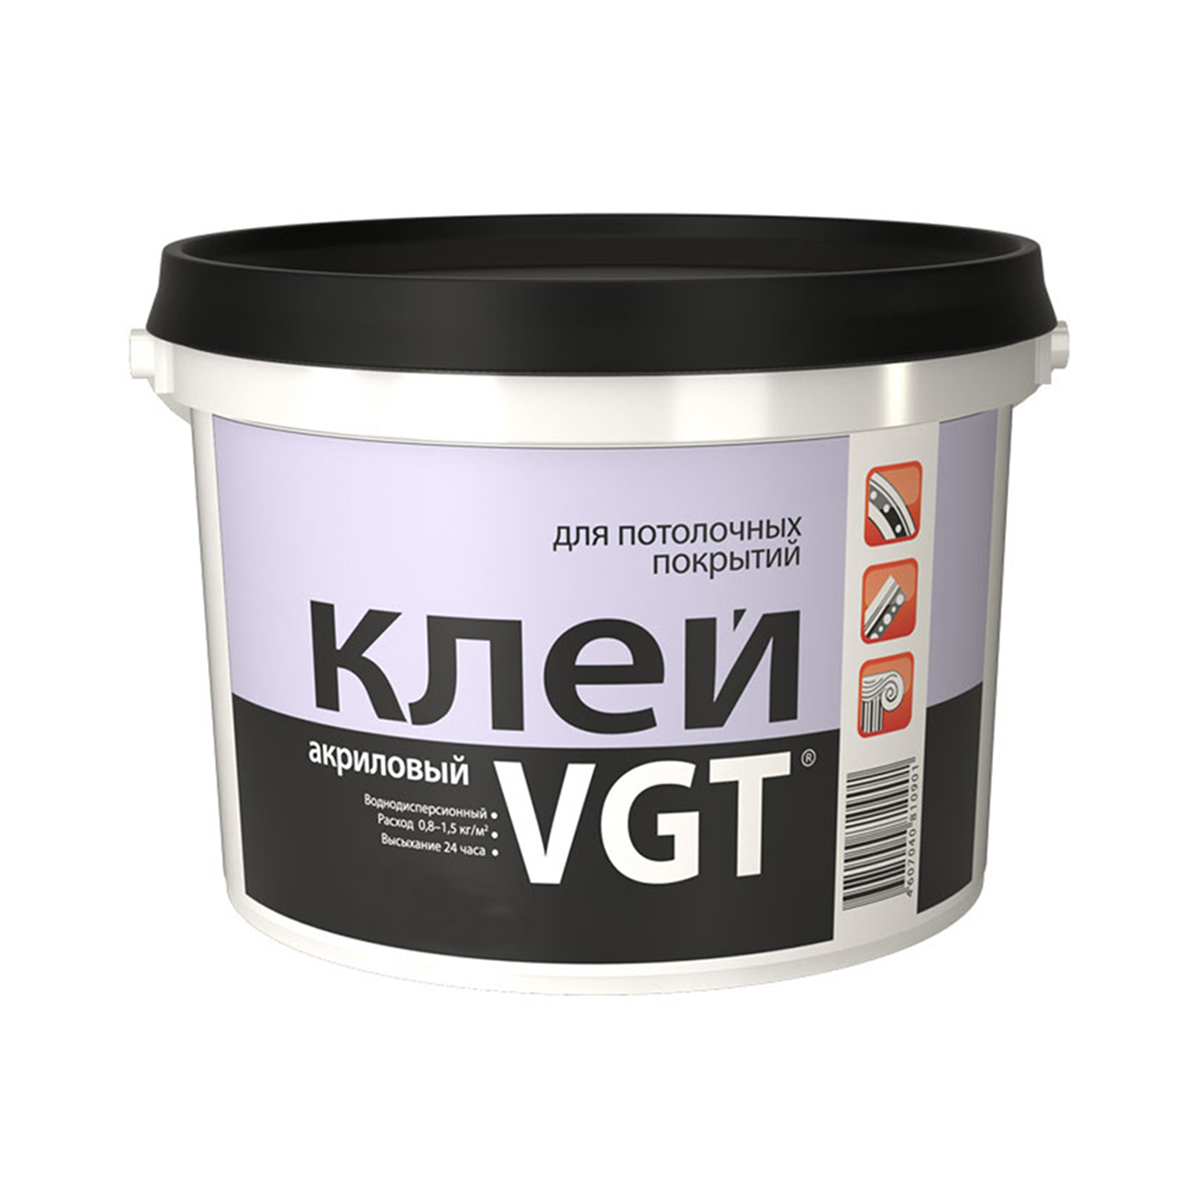 Клей для потолочных покрытий VGT, акриловый, 0,5 кг клей для потолочных покрытий vgt акриловый 0 5 кг